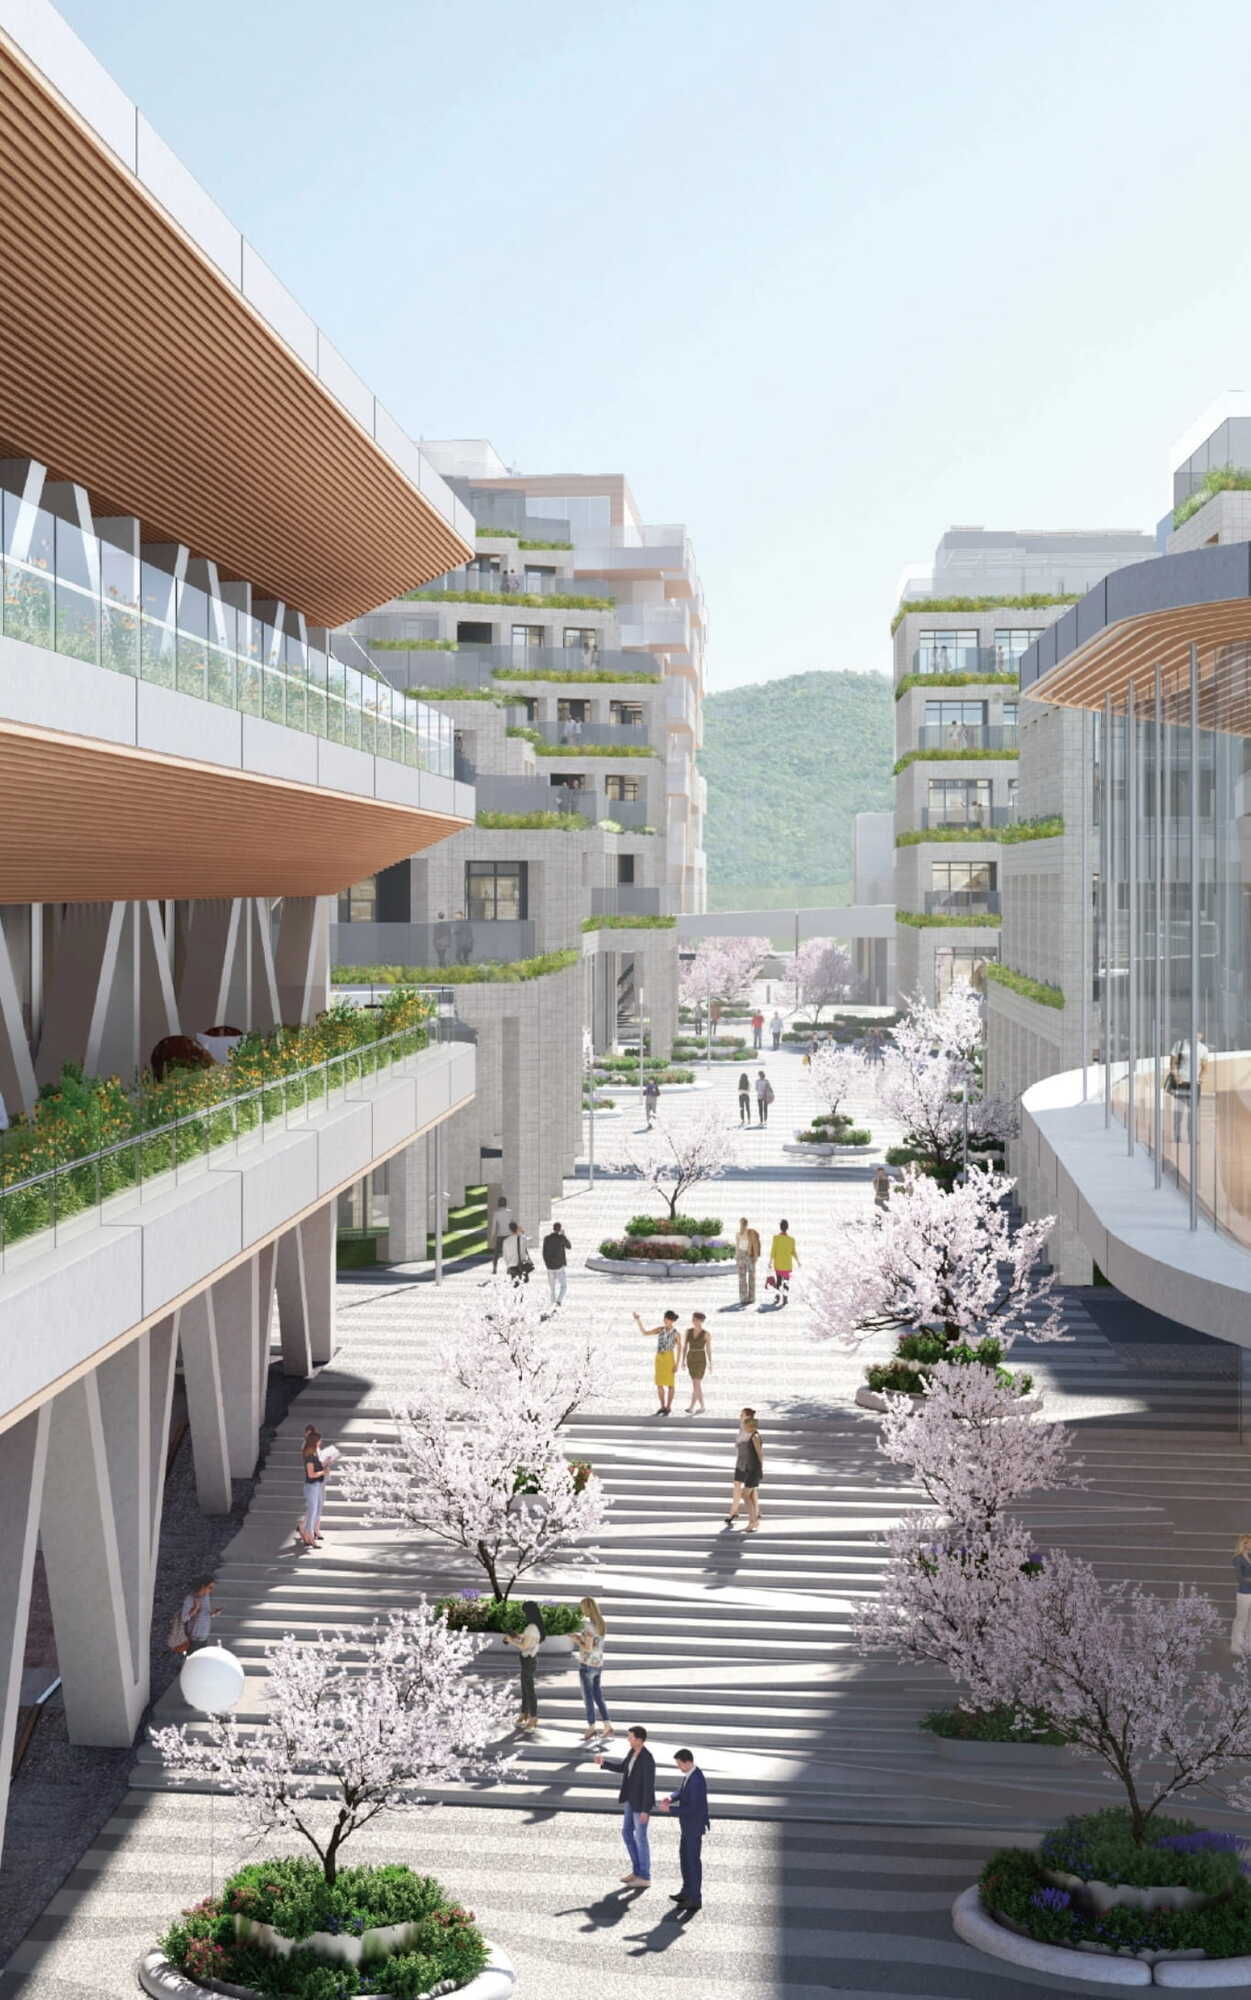 "Розумне місто" в Японії незабаром прийме перших мешканців: який вигляд має "жива лабораторія". Фото і відео
